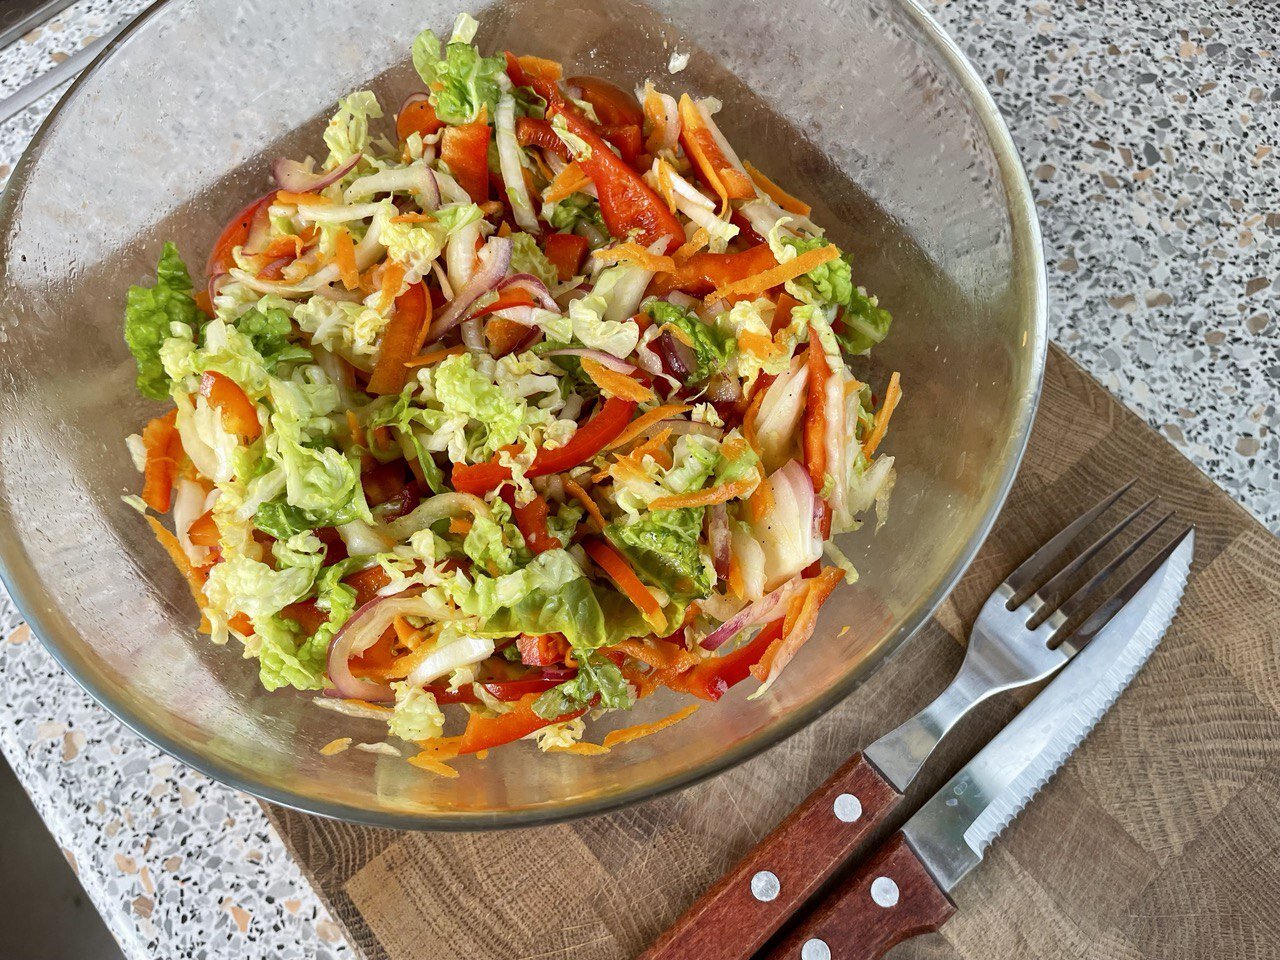 Три вечера в неделю ем этот салат на ужин, чтобы оставаться в форме летом салат, перец, нашинковать, салату, нравится, любой, помощью, витамина, использовать, следующий, можно, крупной, который, салата, капусту, становится, очень, смешиваю, постоять, Морковь